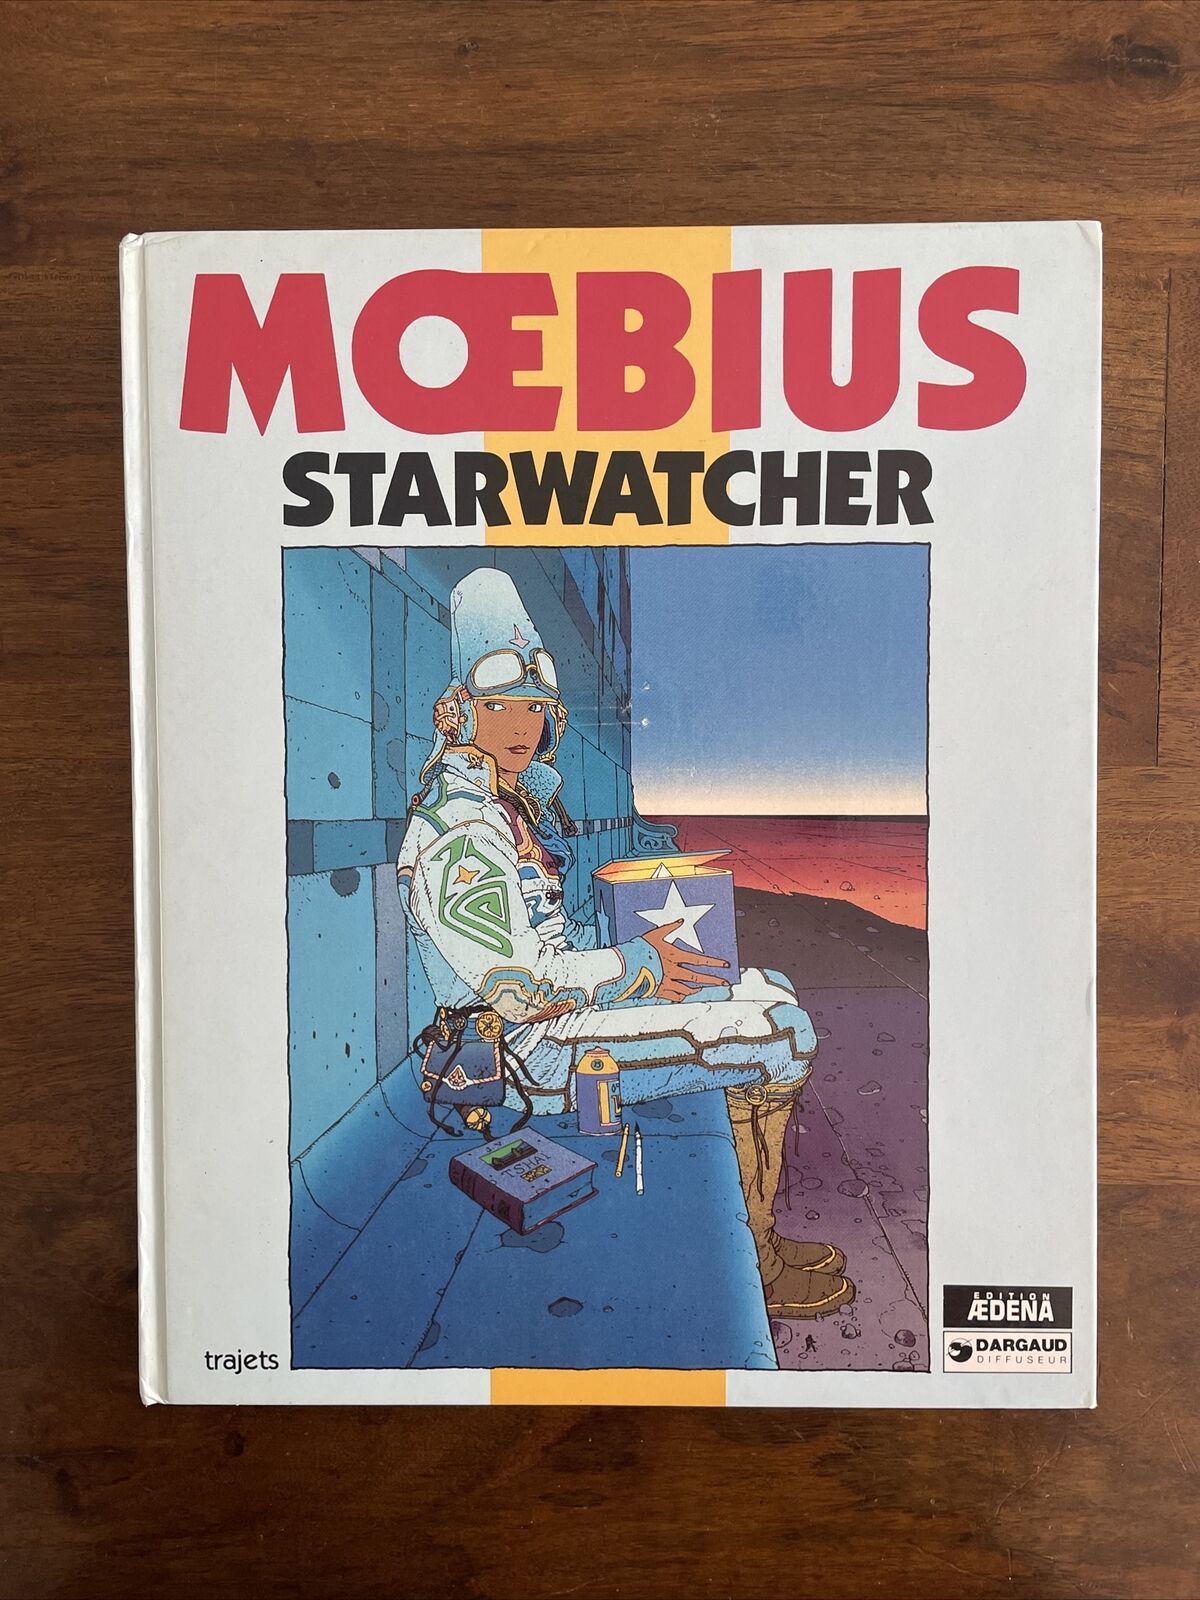 RARE Vintage Moebius Starwatcher Star Watcher trajets Comic Art Book 1st Edition